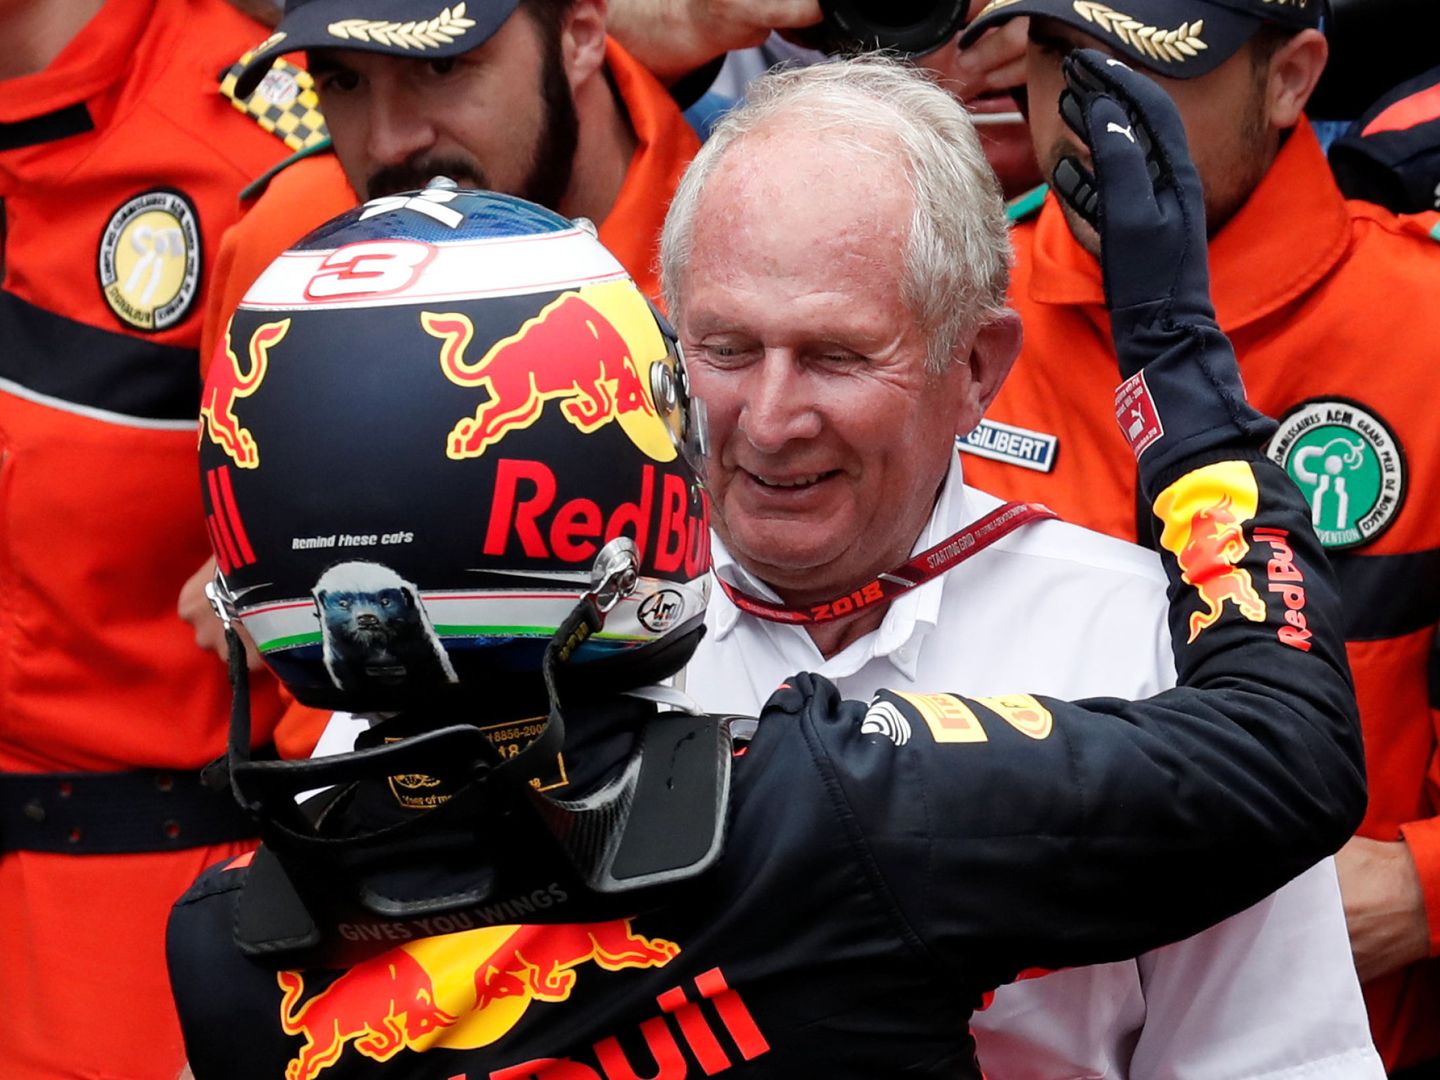 Ricciardo no las tenía todas consigo en Red Bull. La pauesta de Marko es Verstappen. (Reuters)